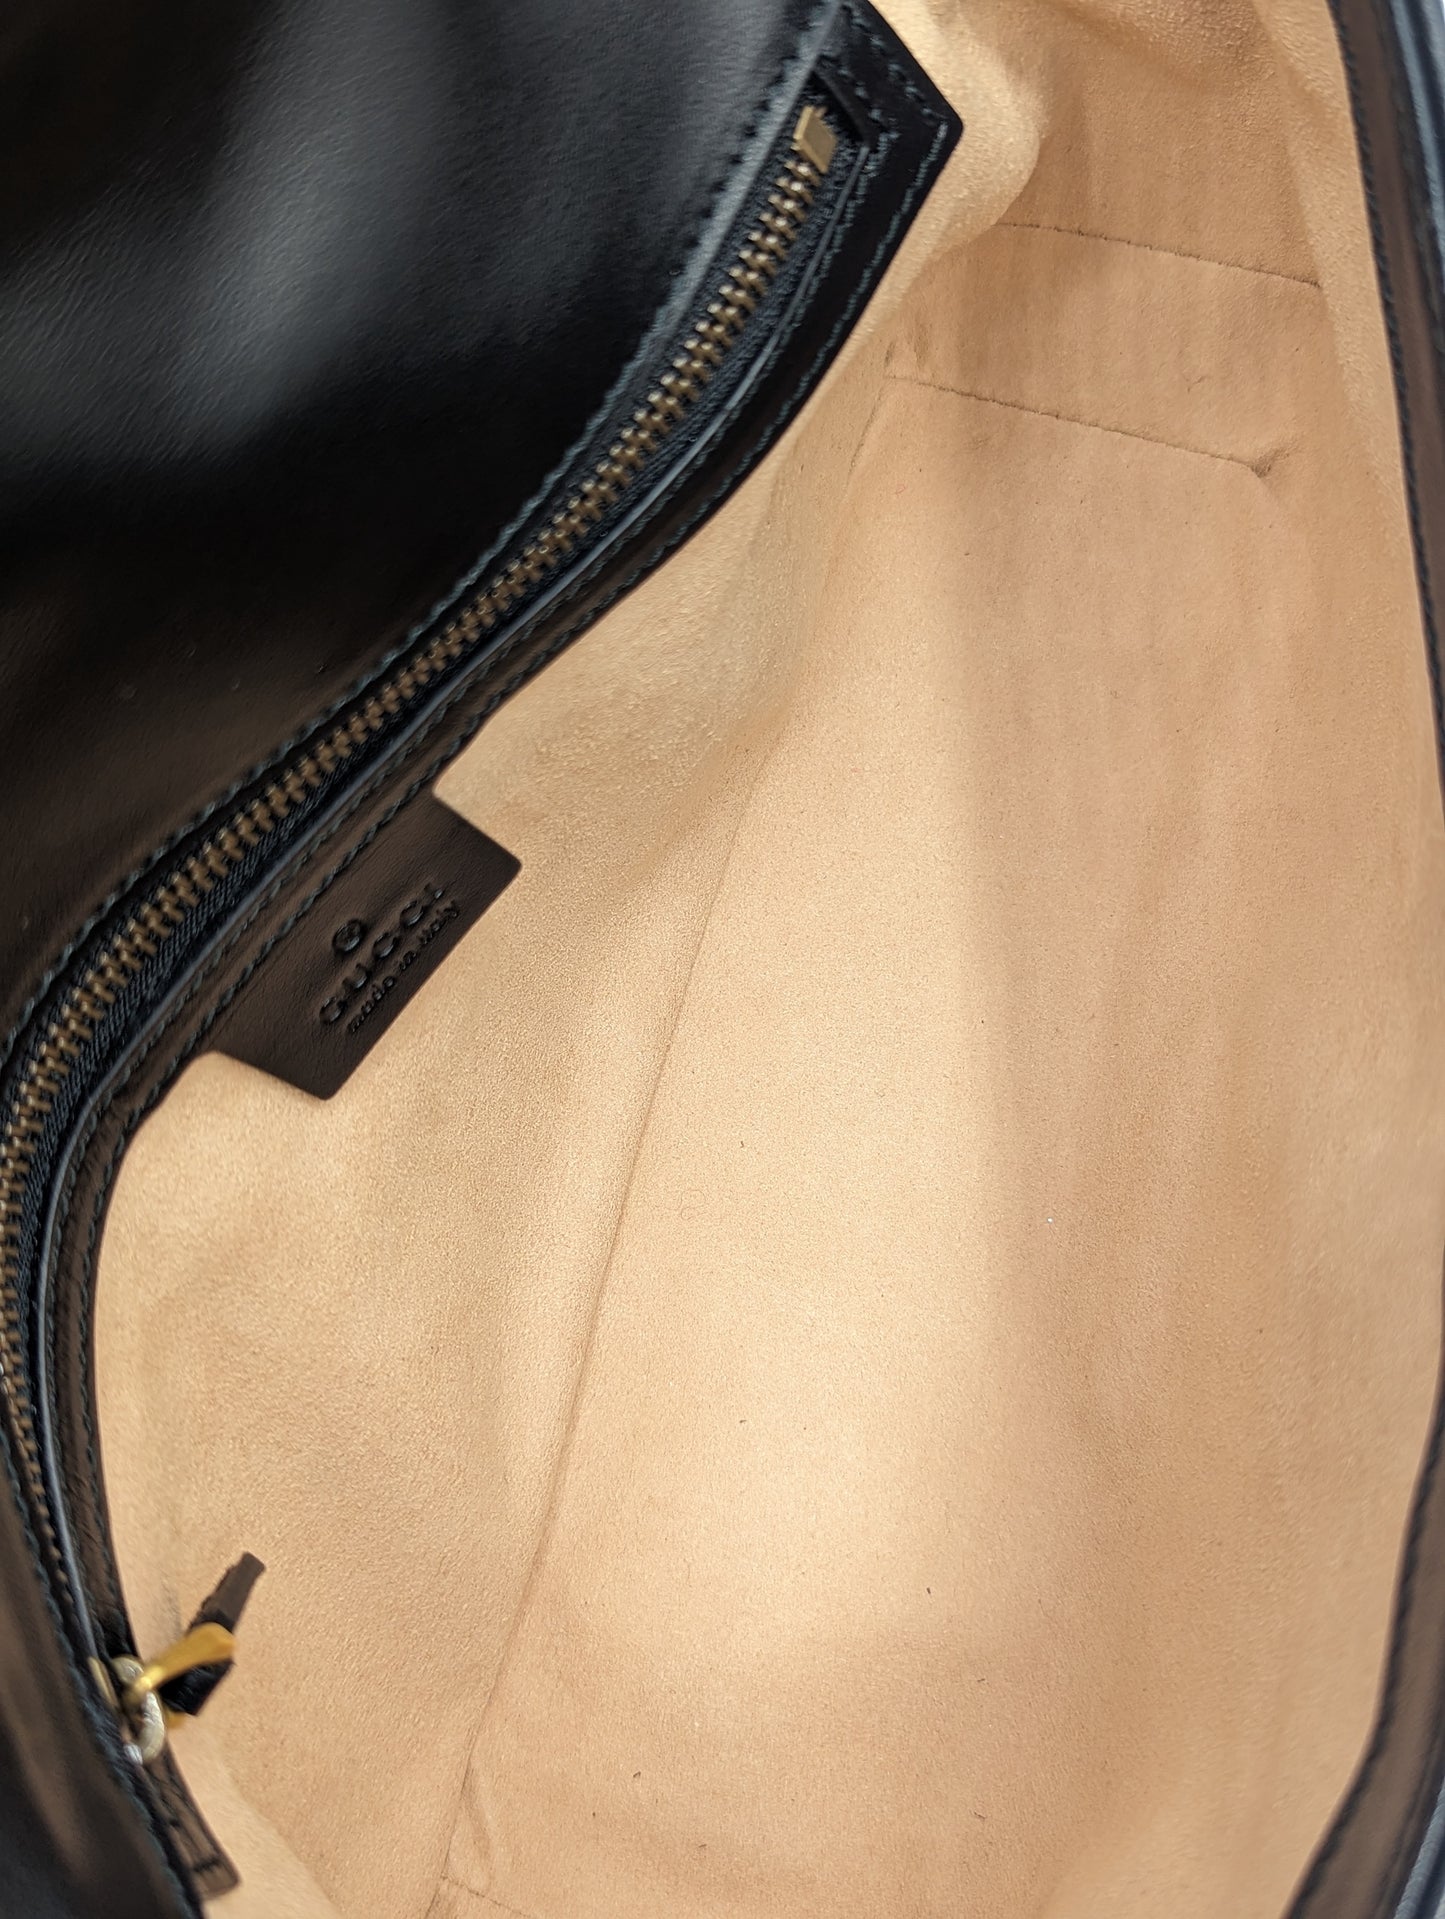 Gucci Marmont Small Flap Crossbody Shoulder Bag